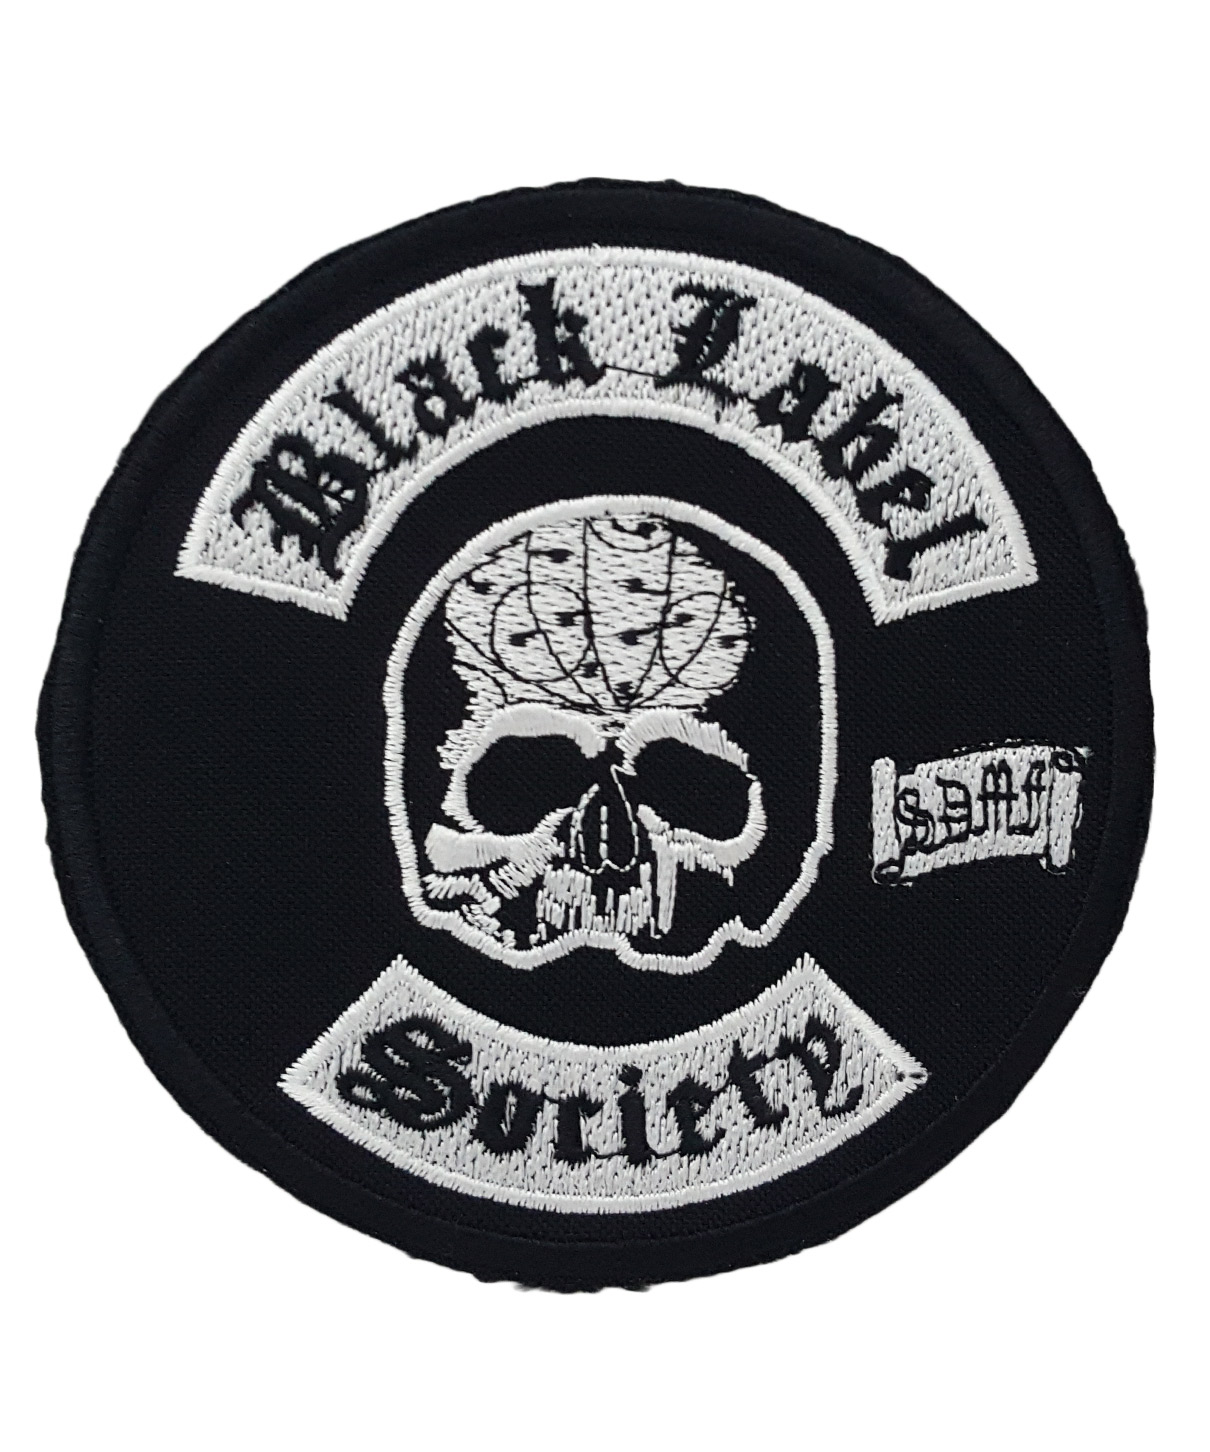 Нашивка Black Label Ssociety - фото 1 - rockbunker.ru